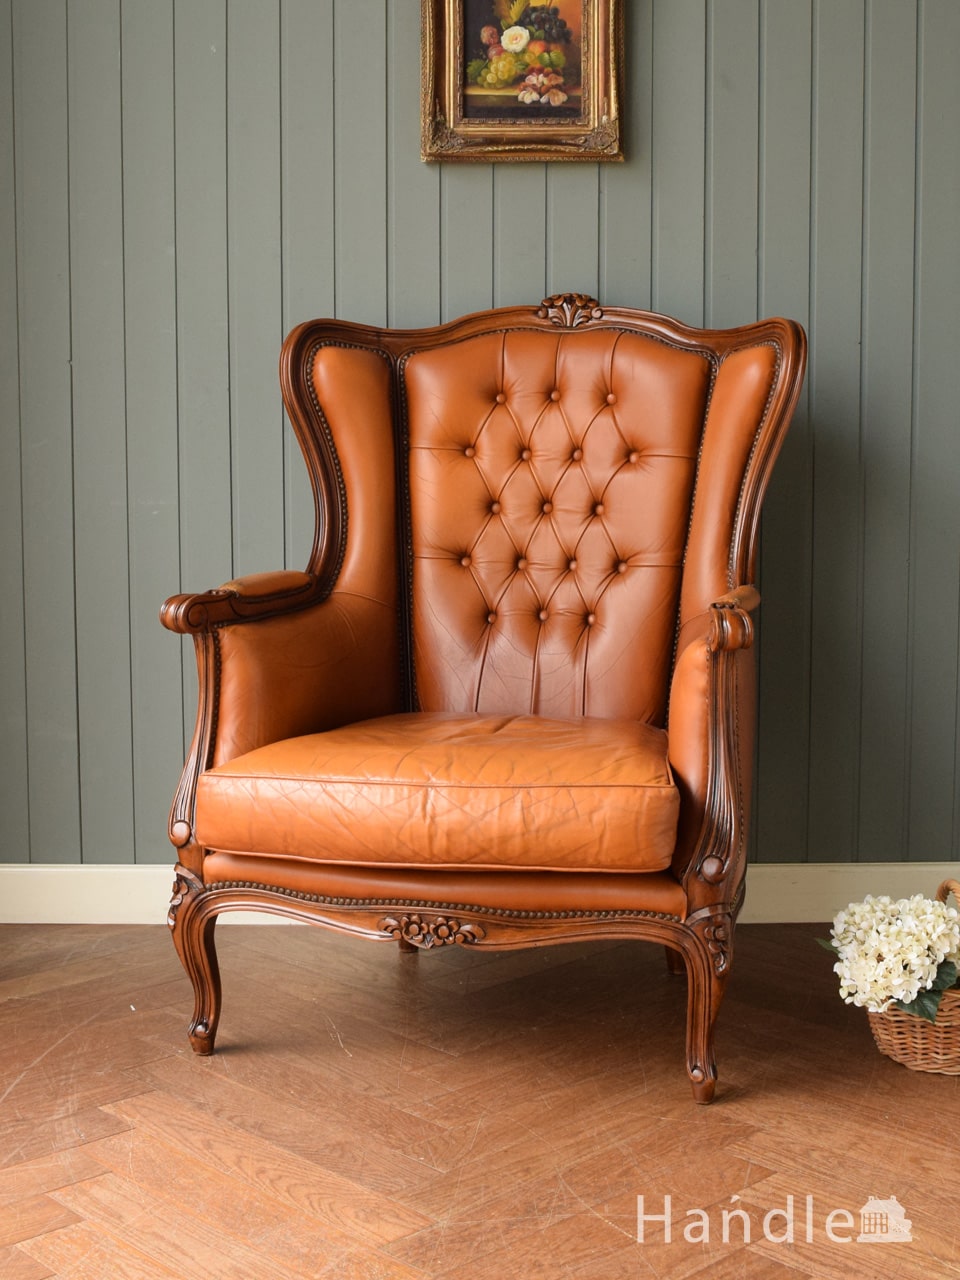 英国アンティークのウィングバックチェア、装飾が美しい一人掛けの椅子 (h-017-c)